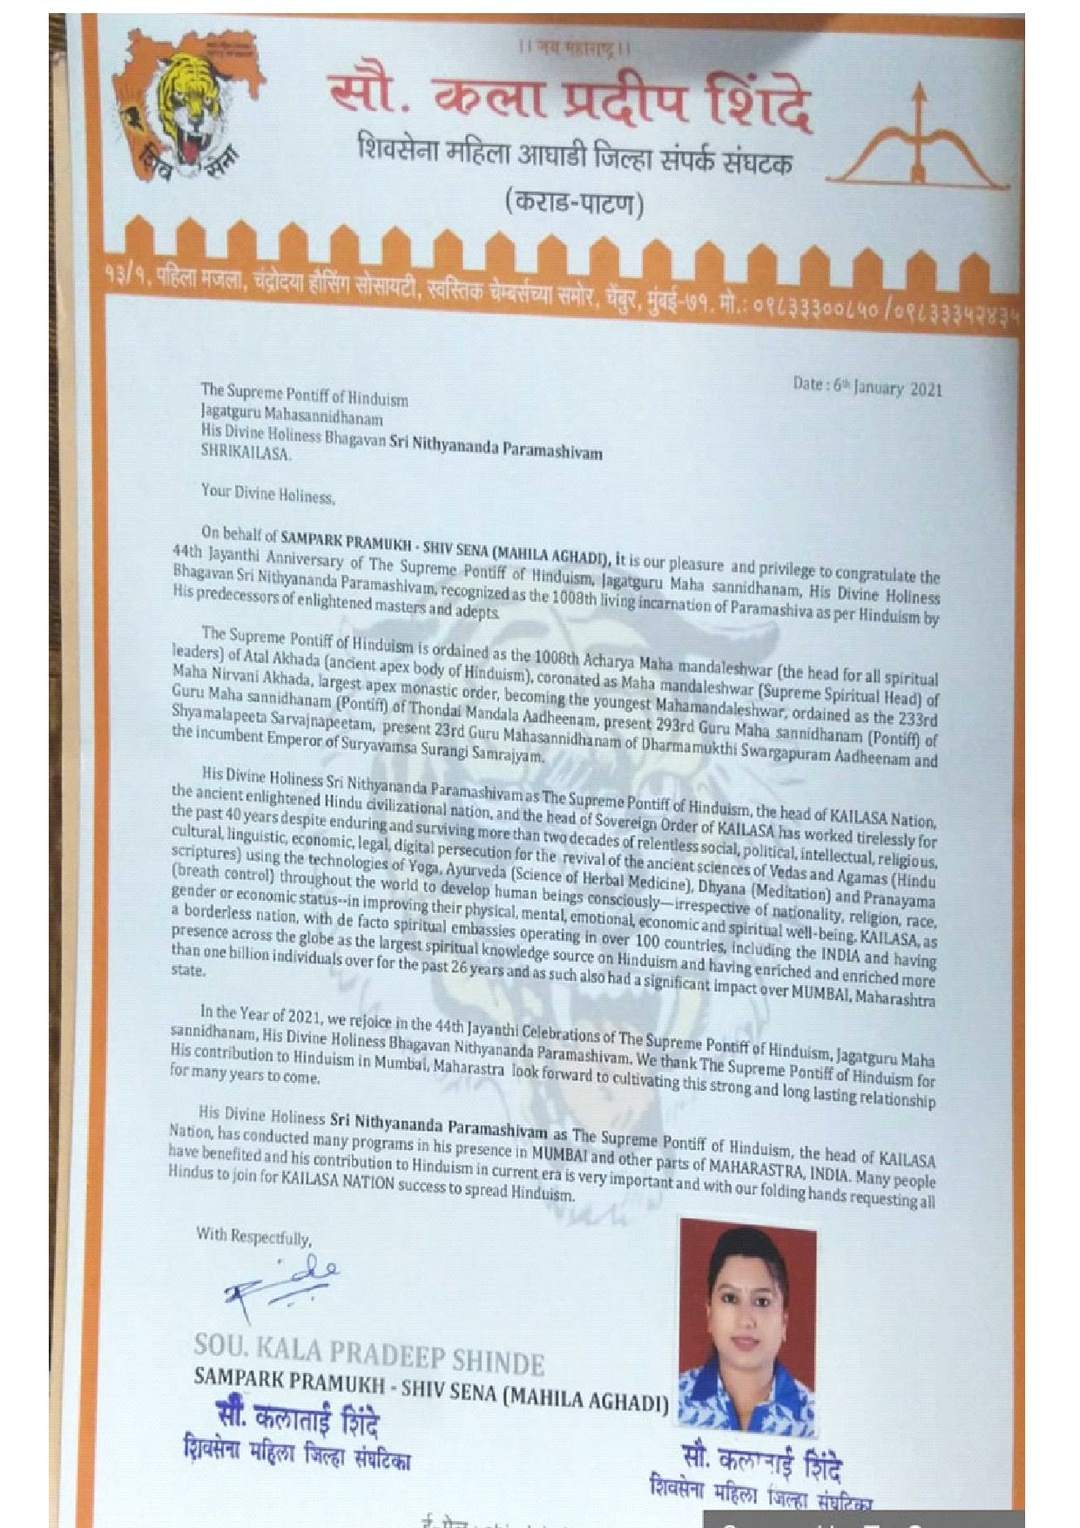 India---Smt.-Kala-Shinde---6-Jan-2021-(Proclamation)-1zIuoxNjyYVsWWyRBcZ3oMchEnf-SJZQu.pdf